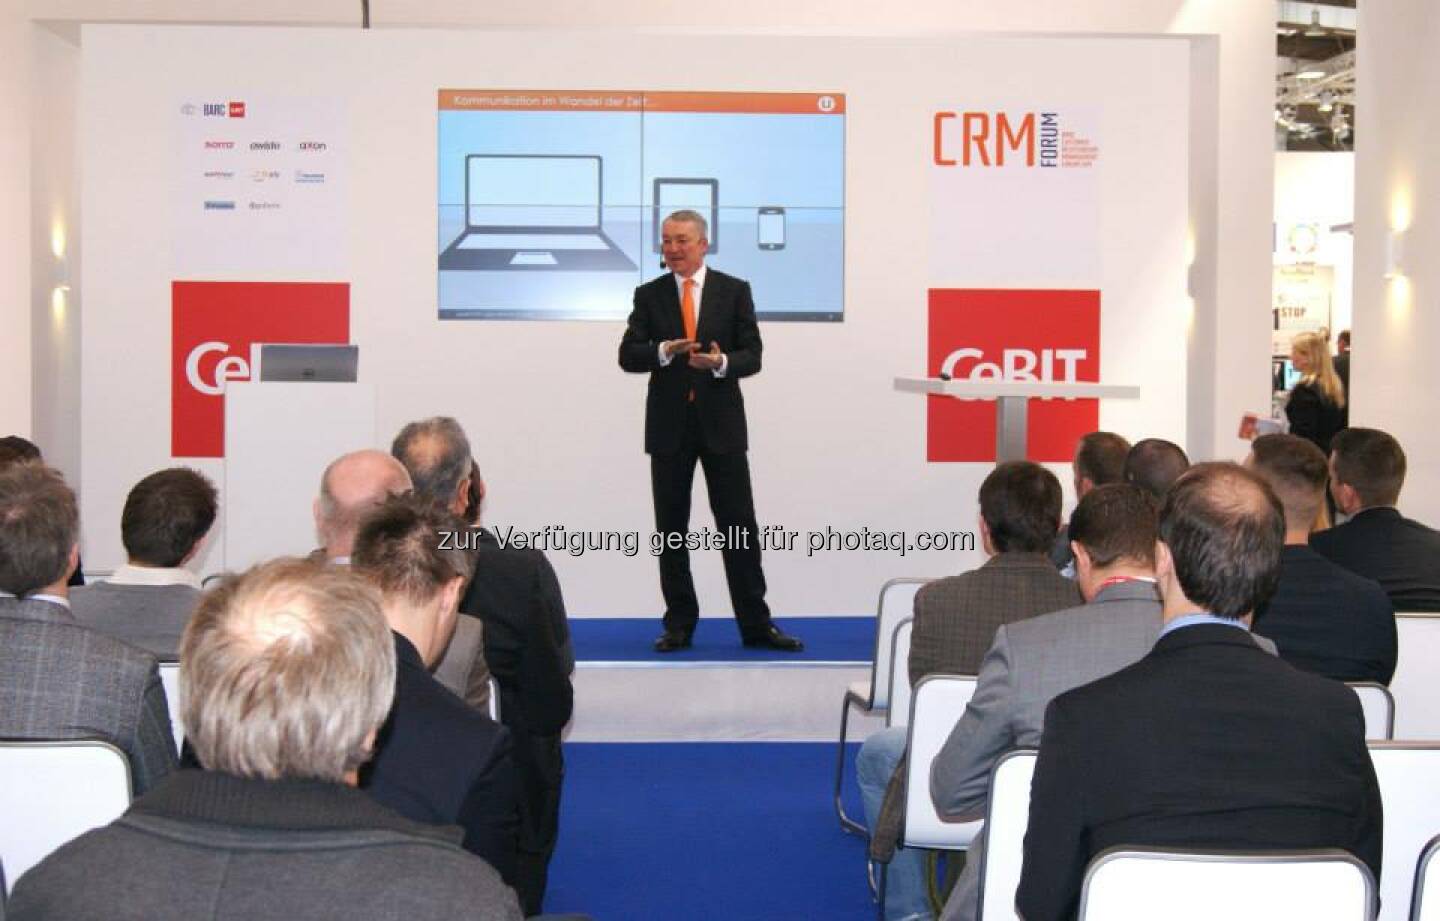 Vortrag Thomas Deutschmann, CEO update software AG: Social CRM - Warum eigentlich?
Hier Aufzeichnung ansehen: 
http://bit.ly/WarumSocialCRM